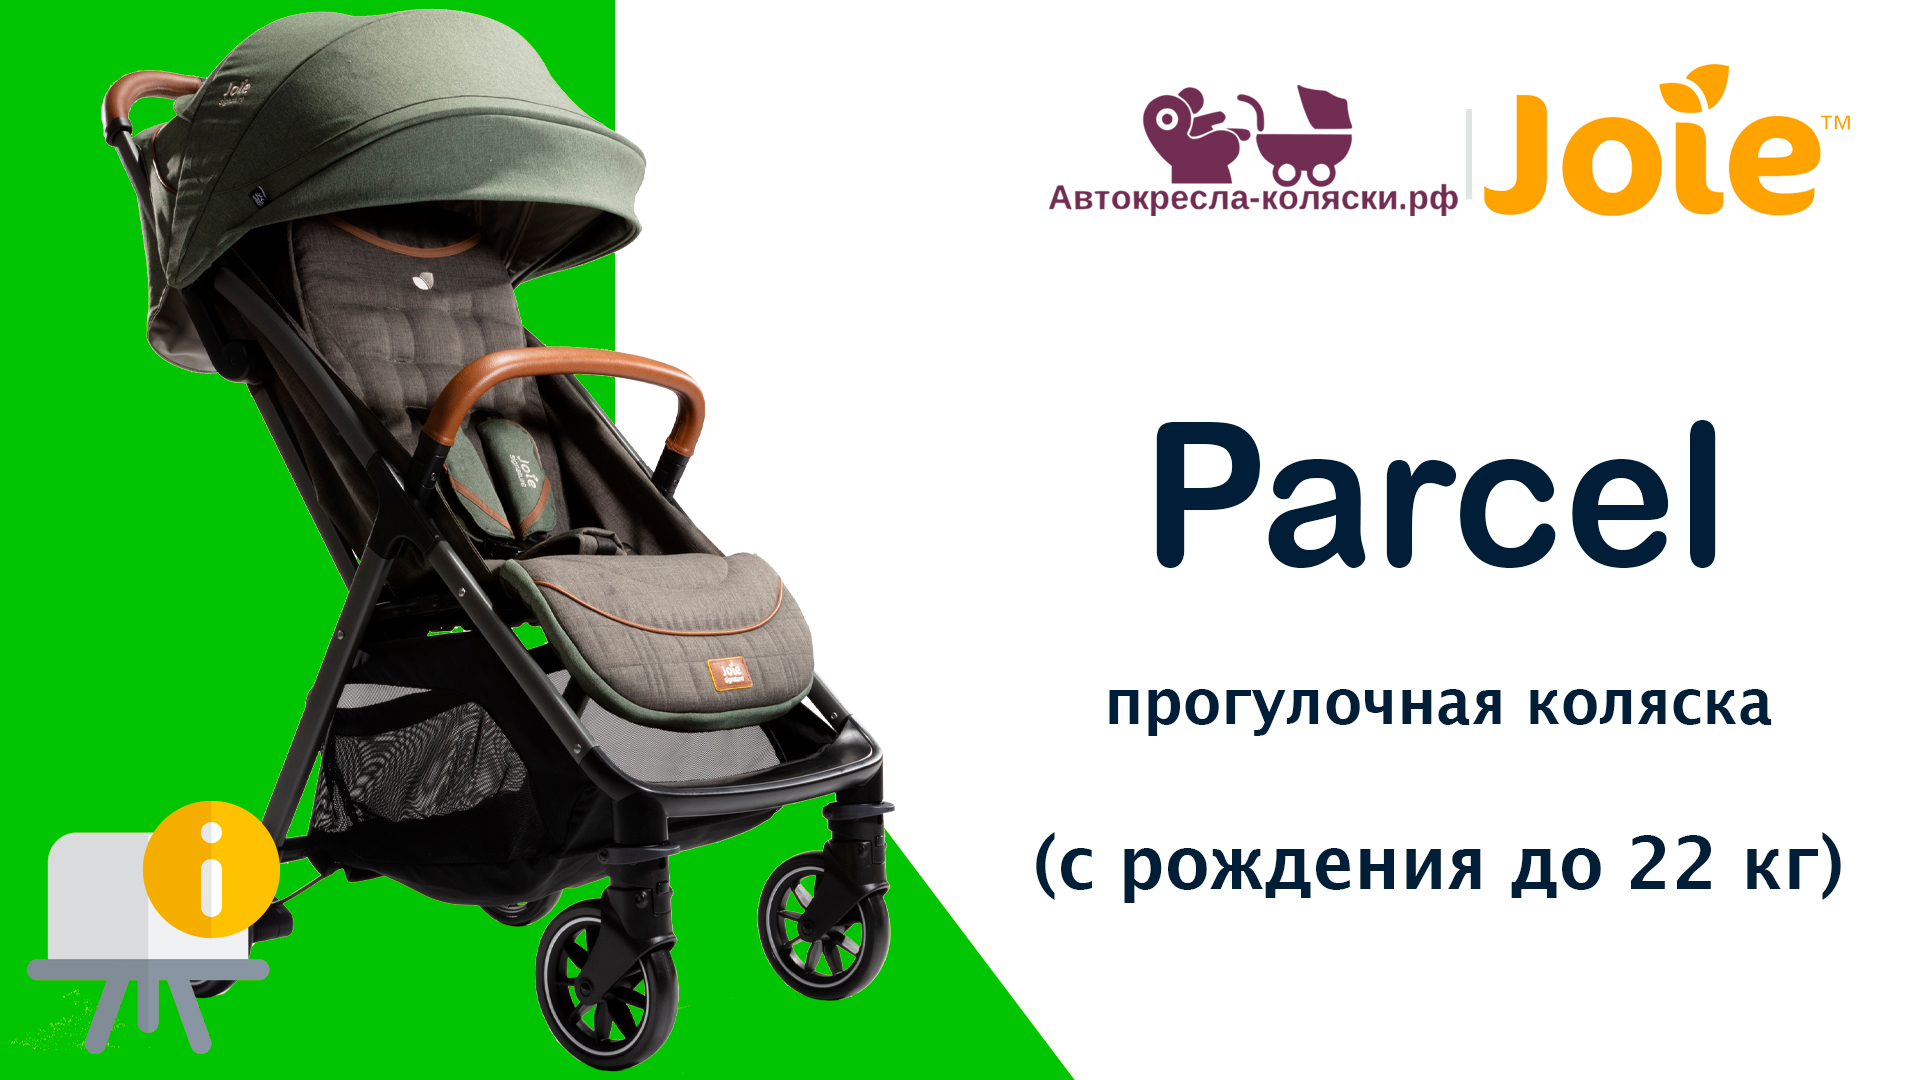 Joie Parcel™  |  ОБЗОР легкой прогулочной коляски для путешествий с рождения до 4-х лет (до 22 кг).